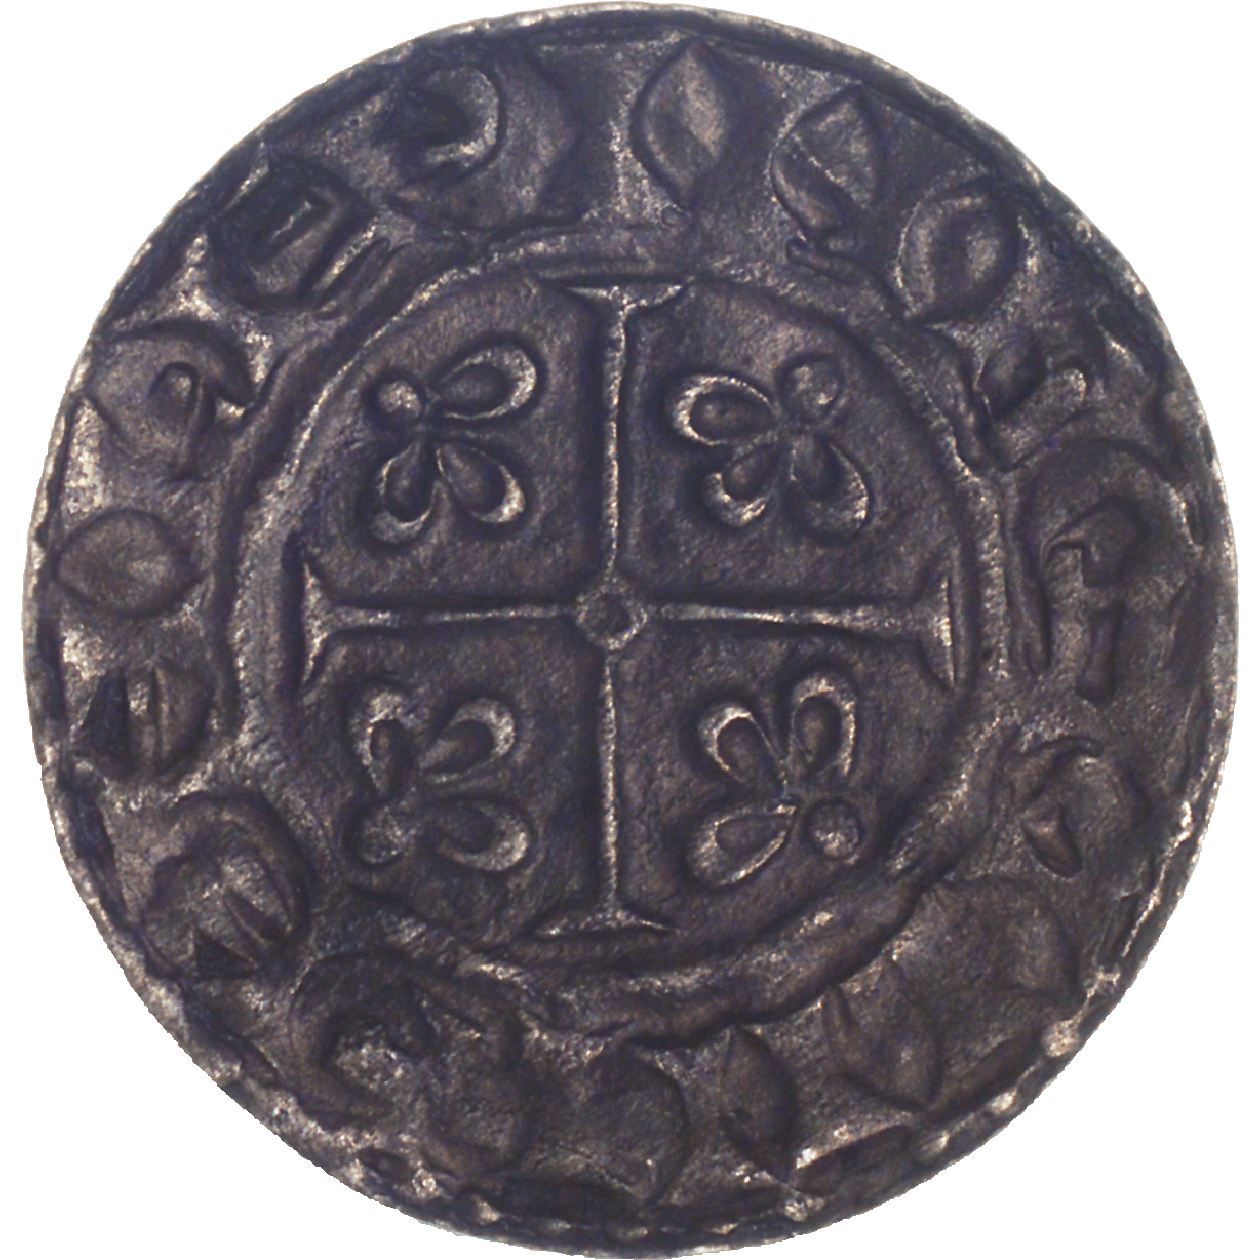 Kingdom of England, William I the Conqueror, Penny (reverse)